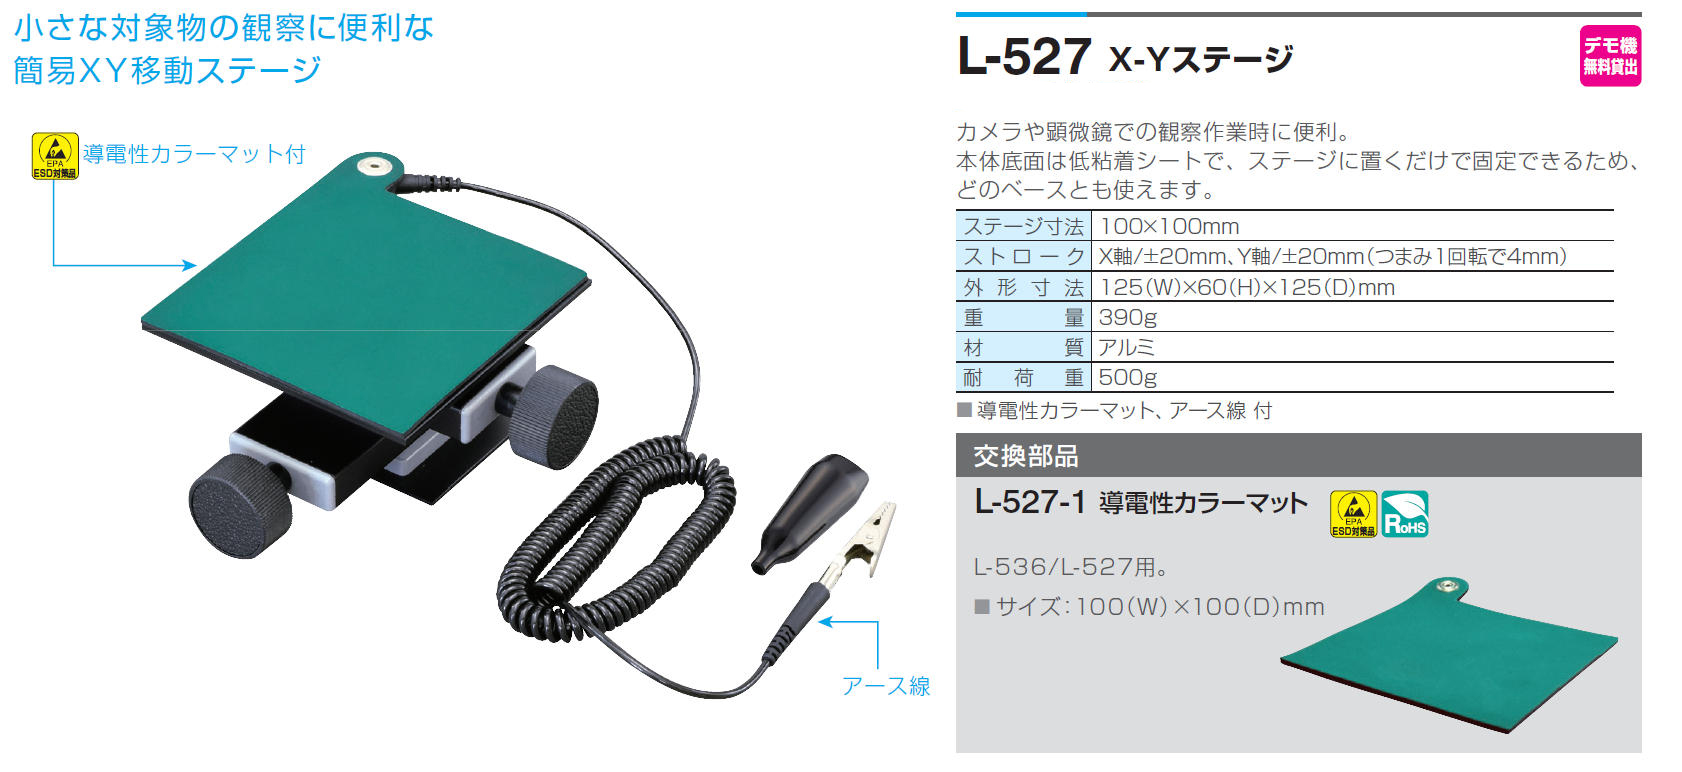 ホーザン X-Yテーブル K-50 - 3